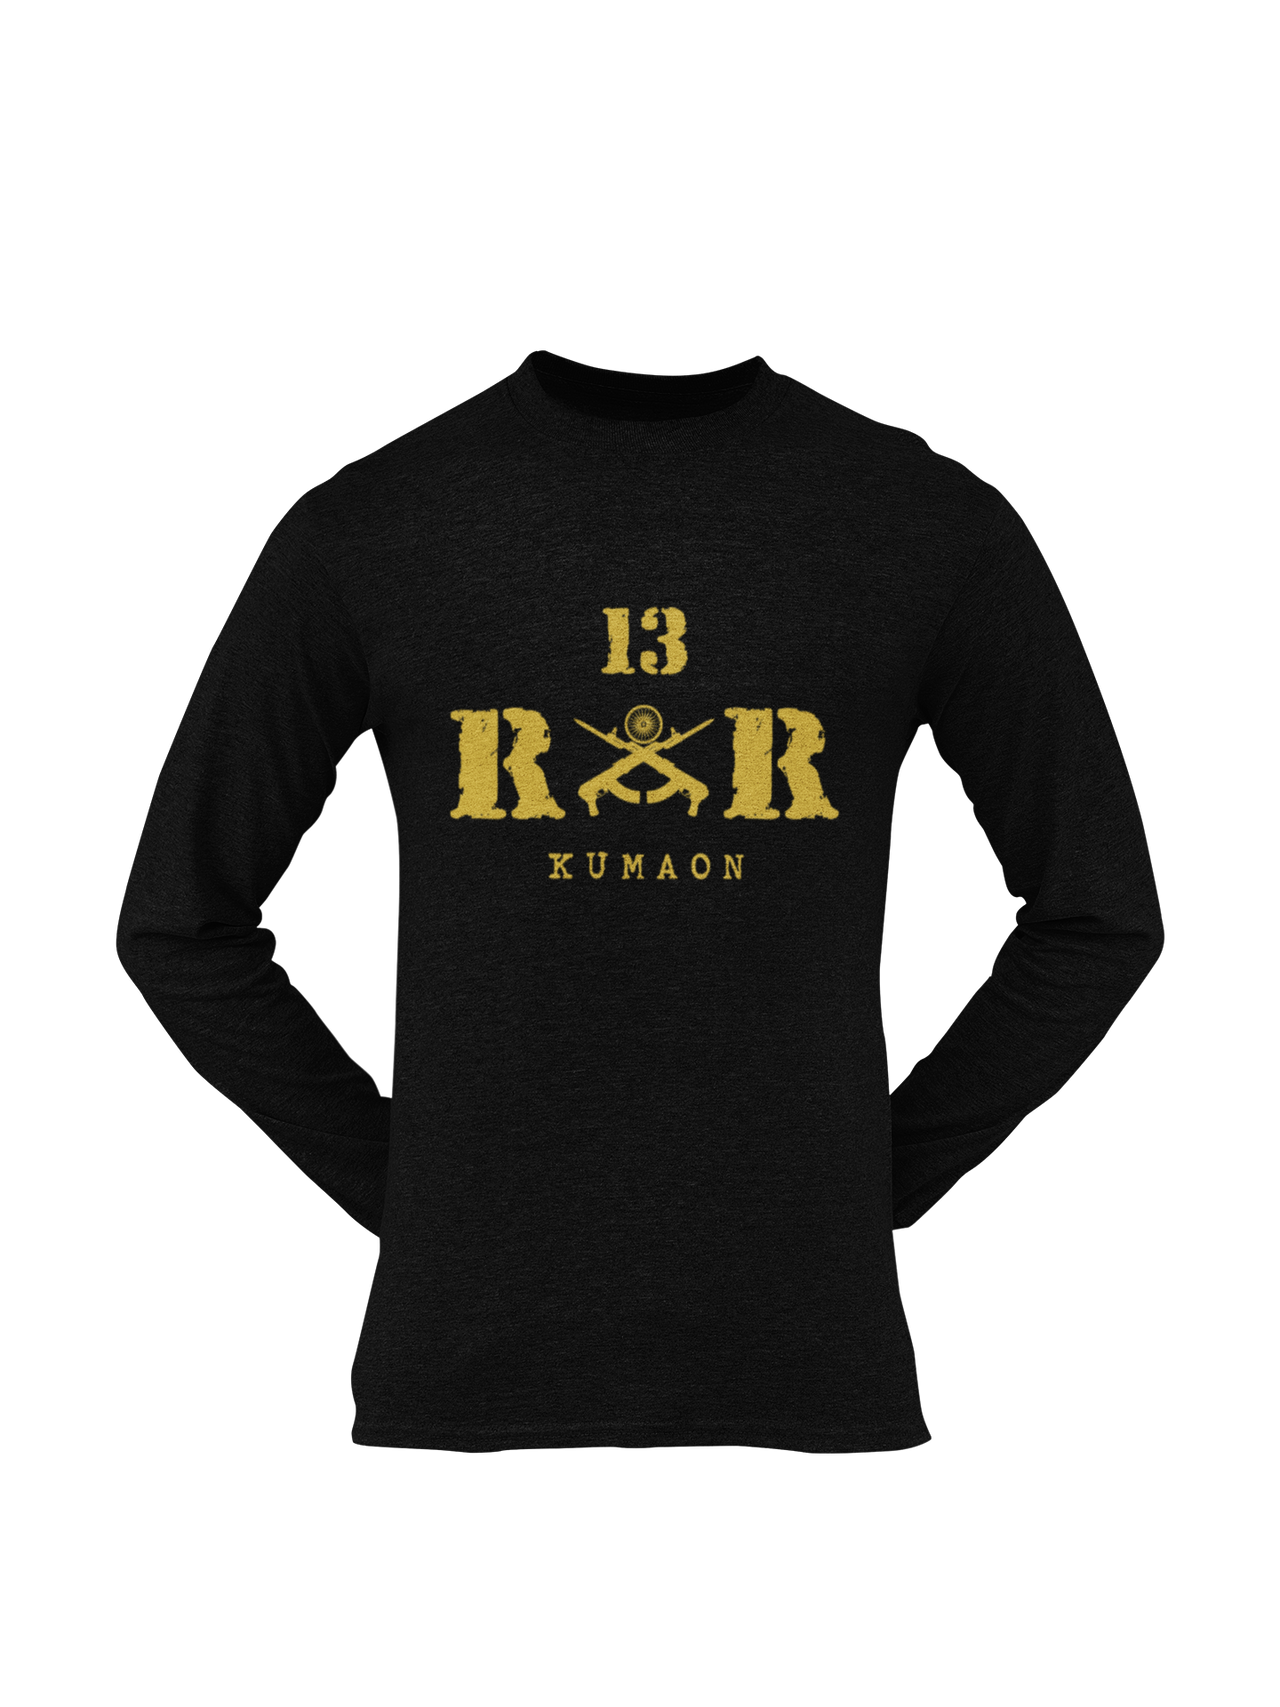 Rashtriya Rifles T-shirt - 13 RR Kumaon (Men)